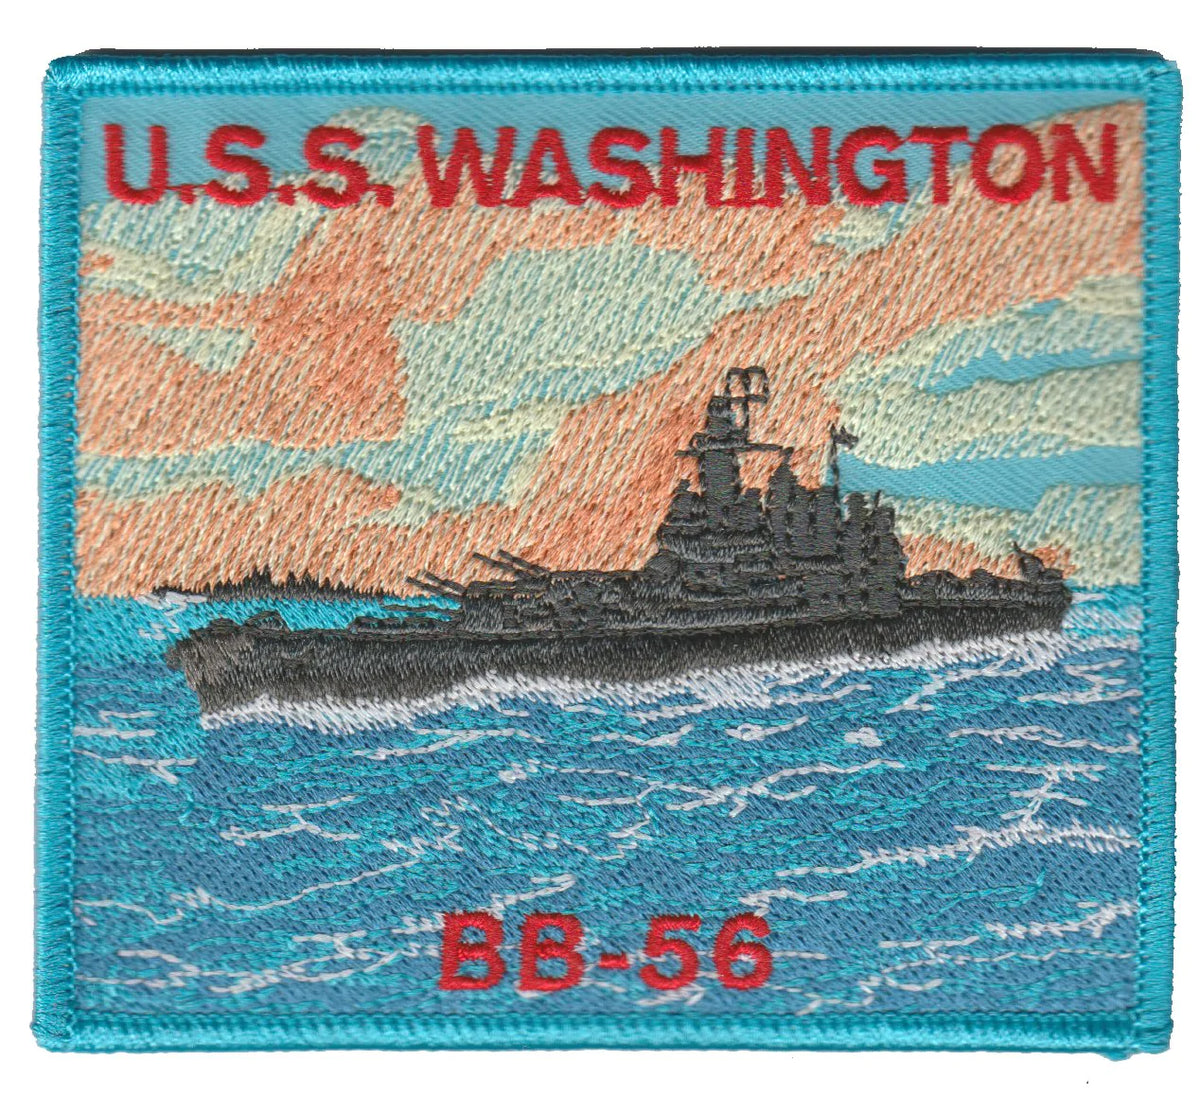 U.S.S. Washington BB-56 Patch - U.S. Navy